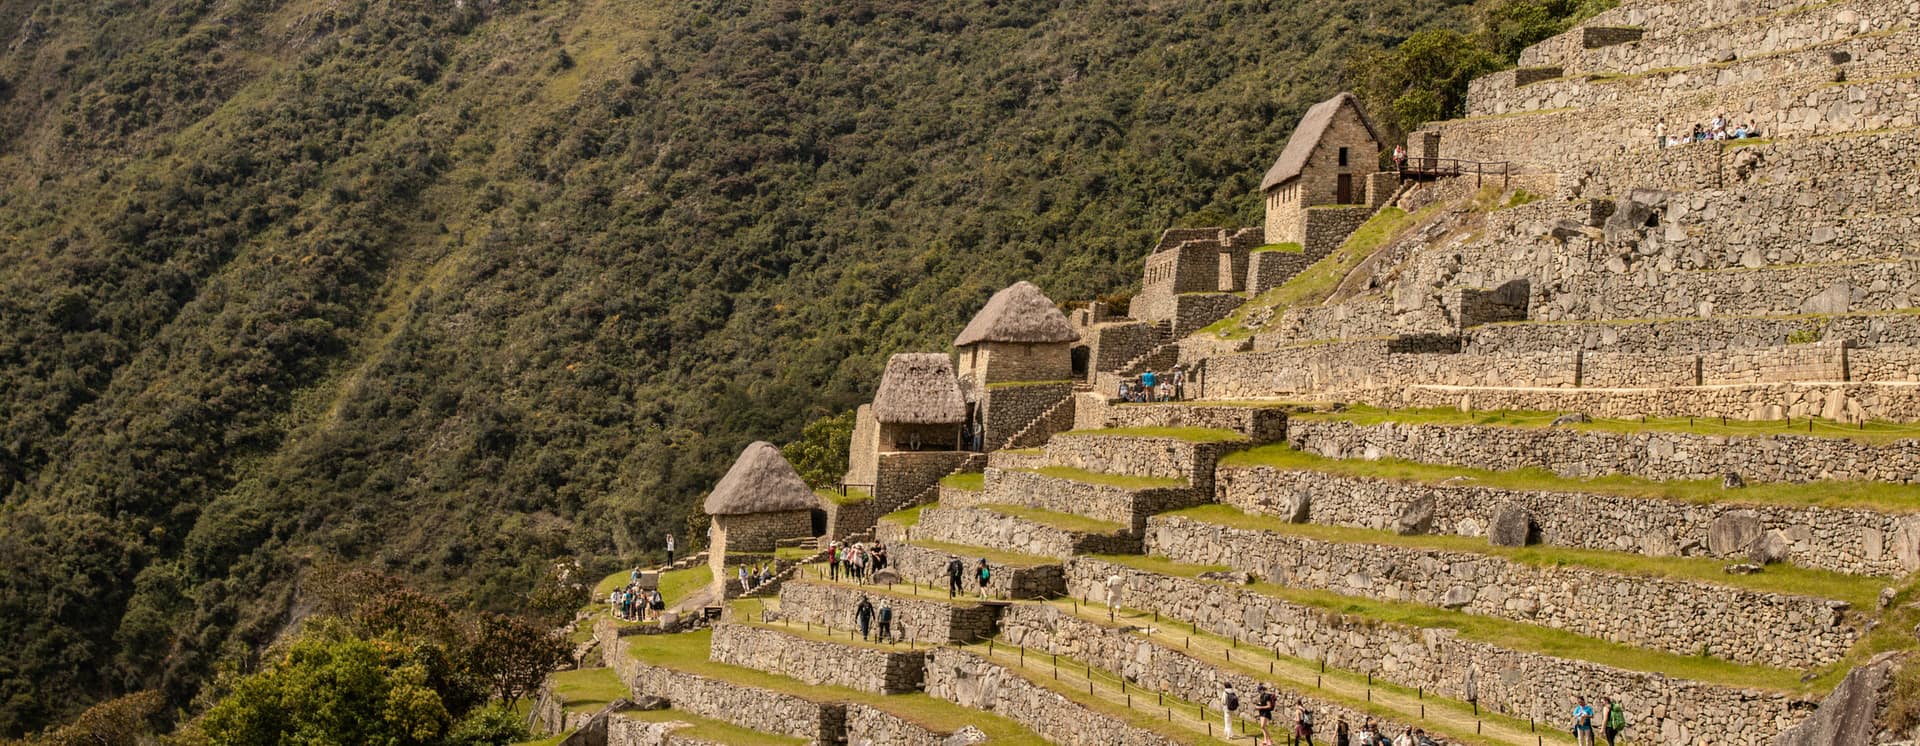 View of Machu Picchu terraces - Machu Picchu Day trip